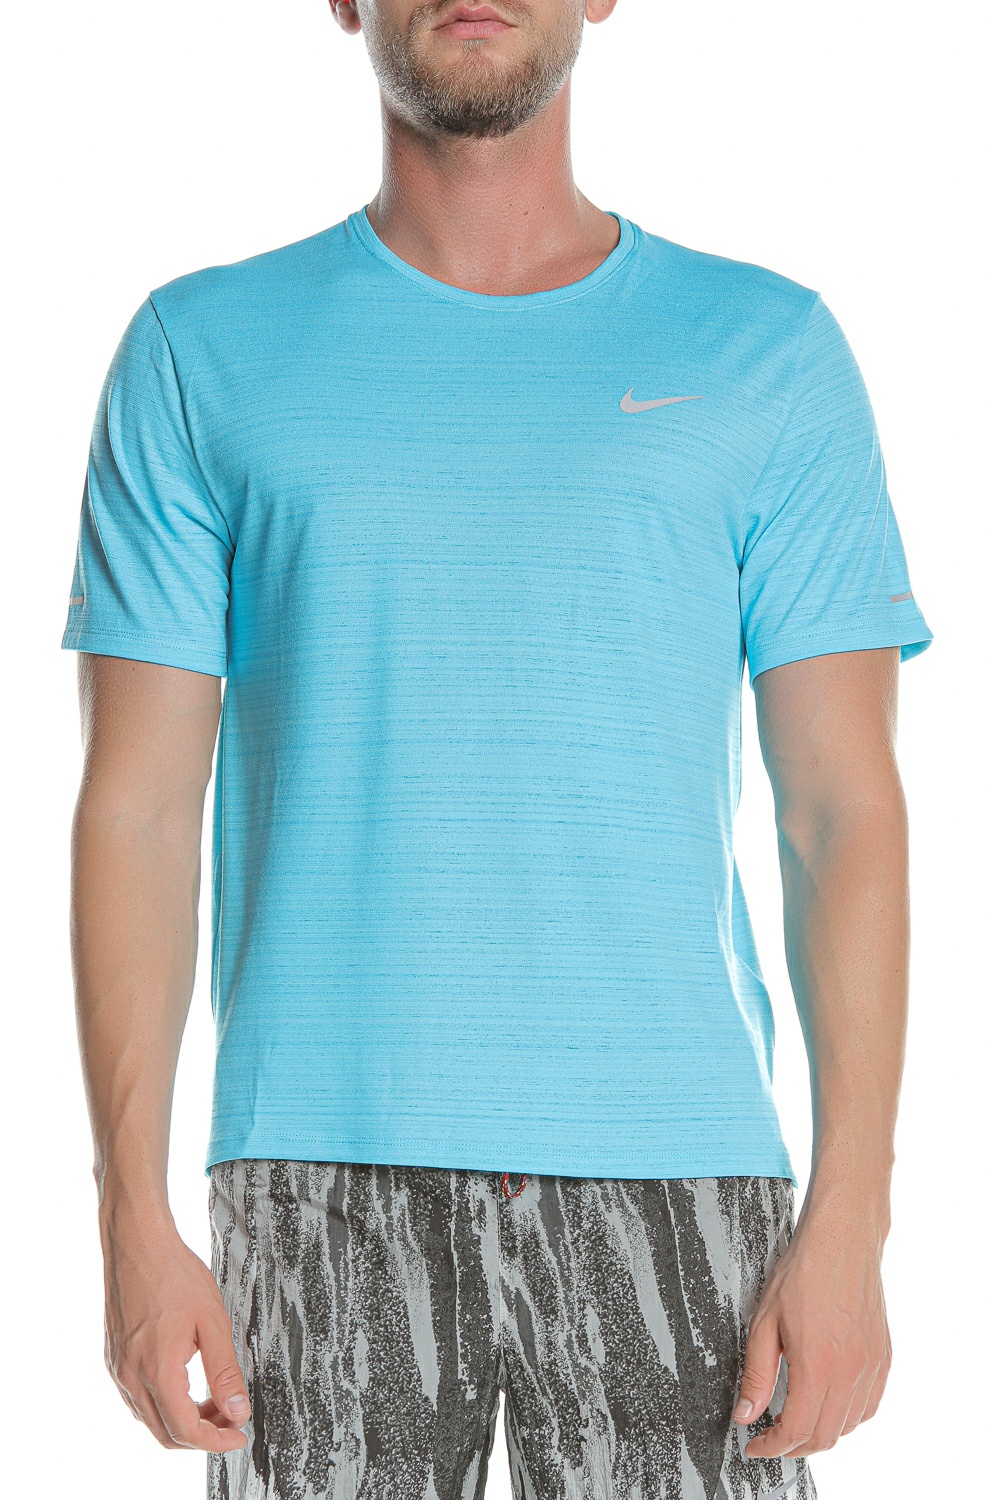 Ανδρικά/Ρούχα/Αθλητικά/T-shirt NIKE - Ανδρική μπλούζα NIKE DF MILER TOP SS γαλάζια